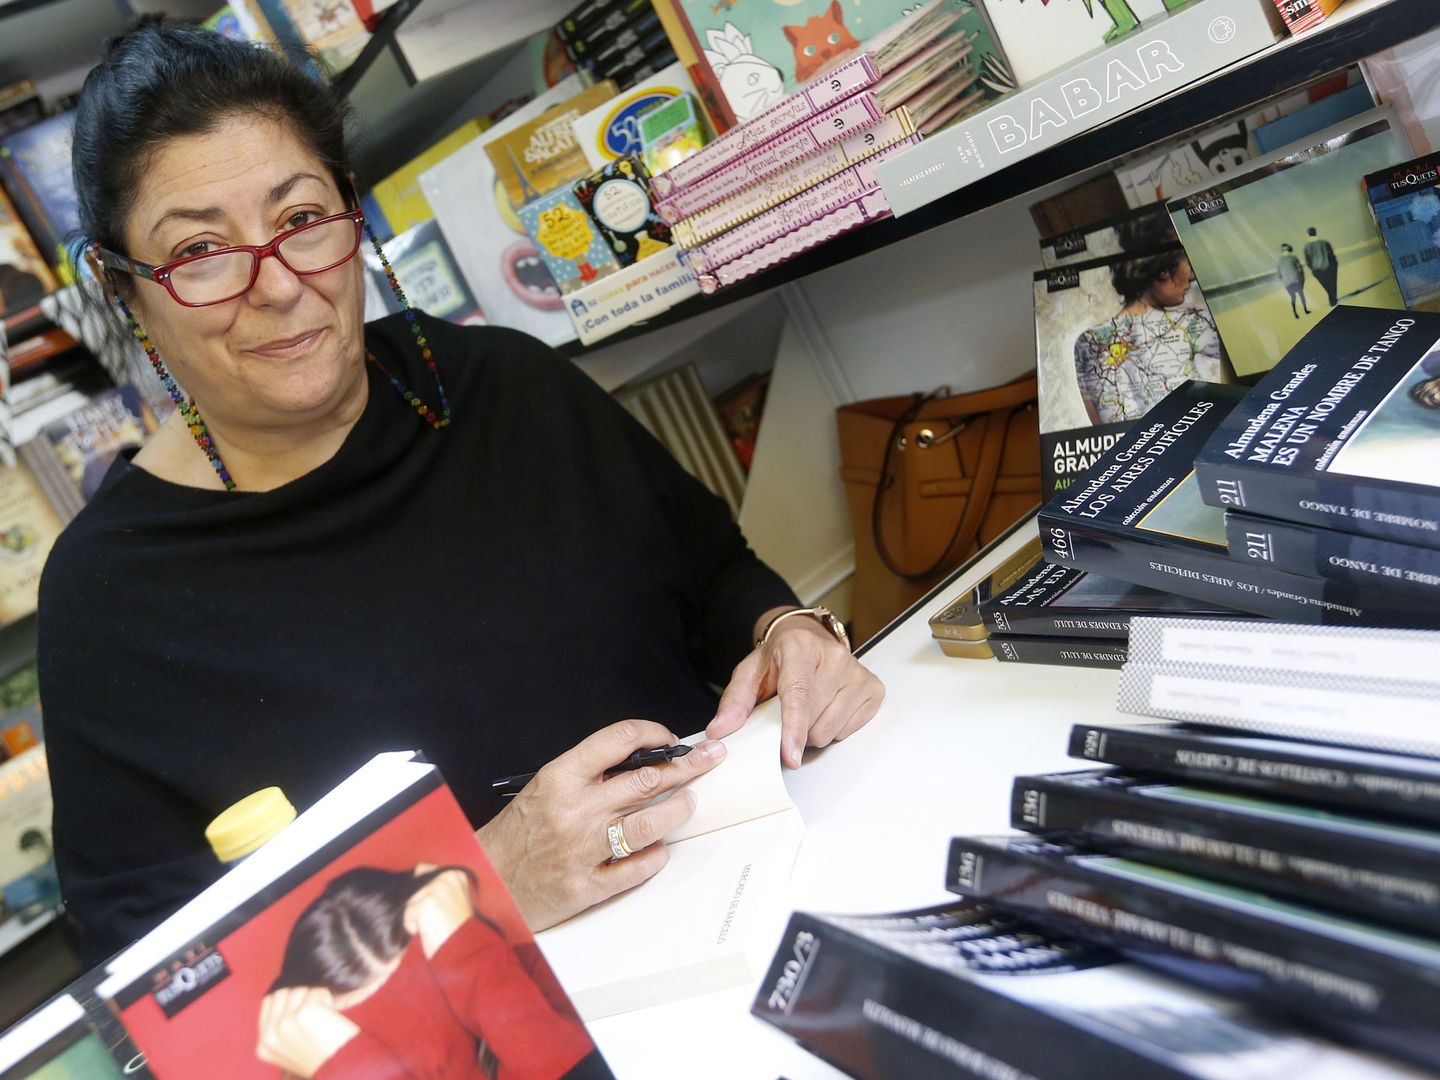 La escritora Almudena Grandes firma ejemplares de su libro, en la 75ª edición de la Feria del Libro | EFE 